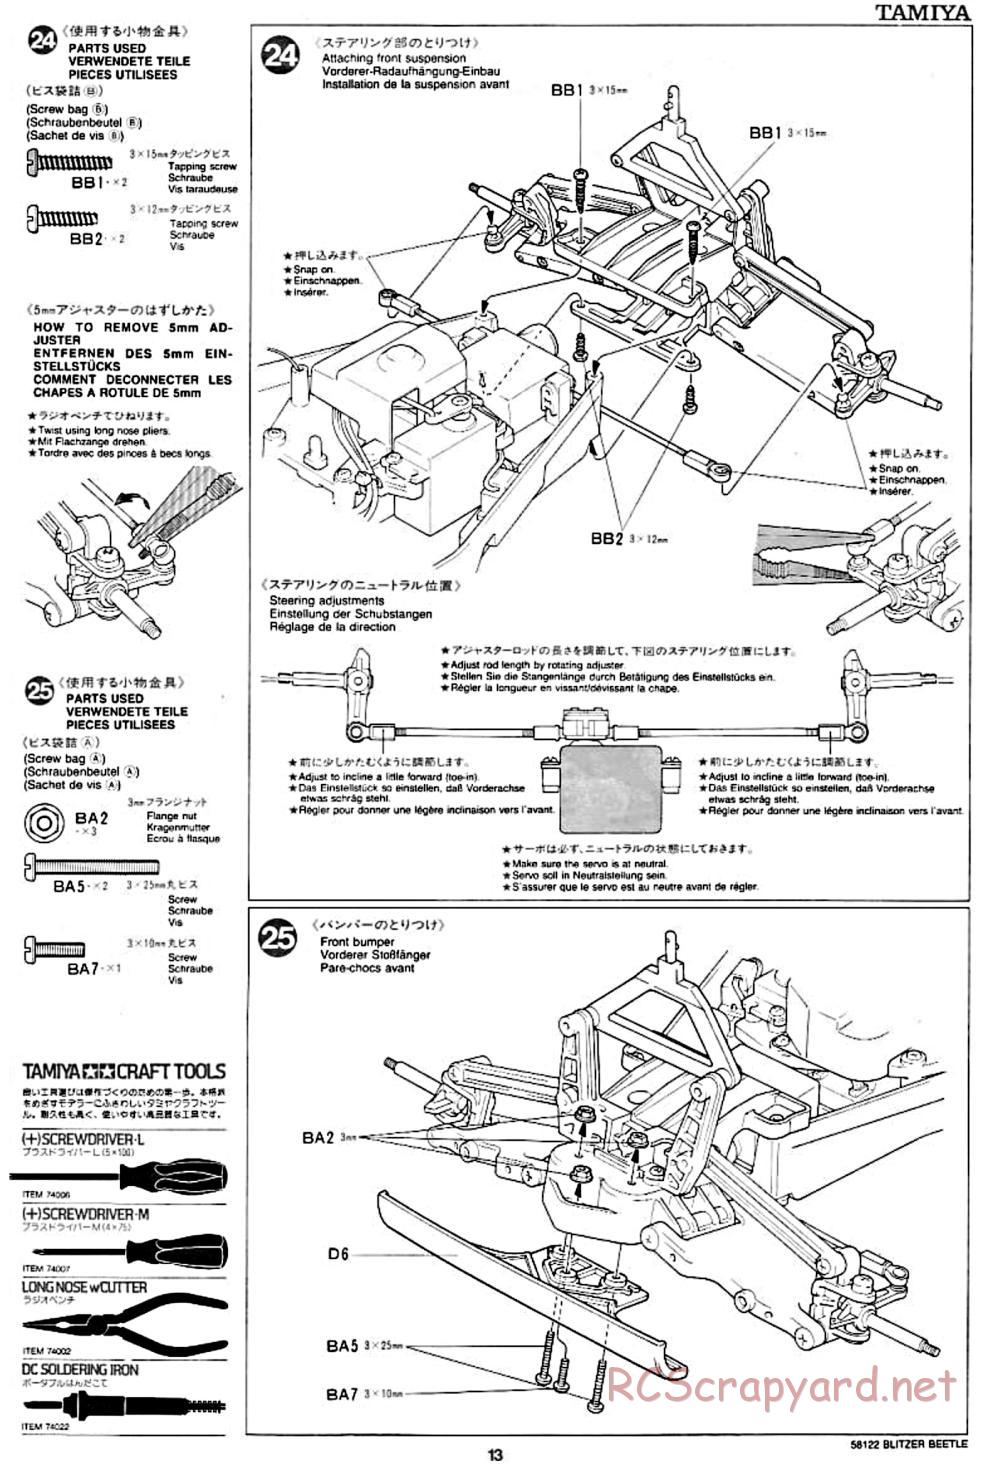 Tamiya - Blitzer Beetle Chassis - Manual - Page 13